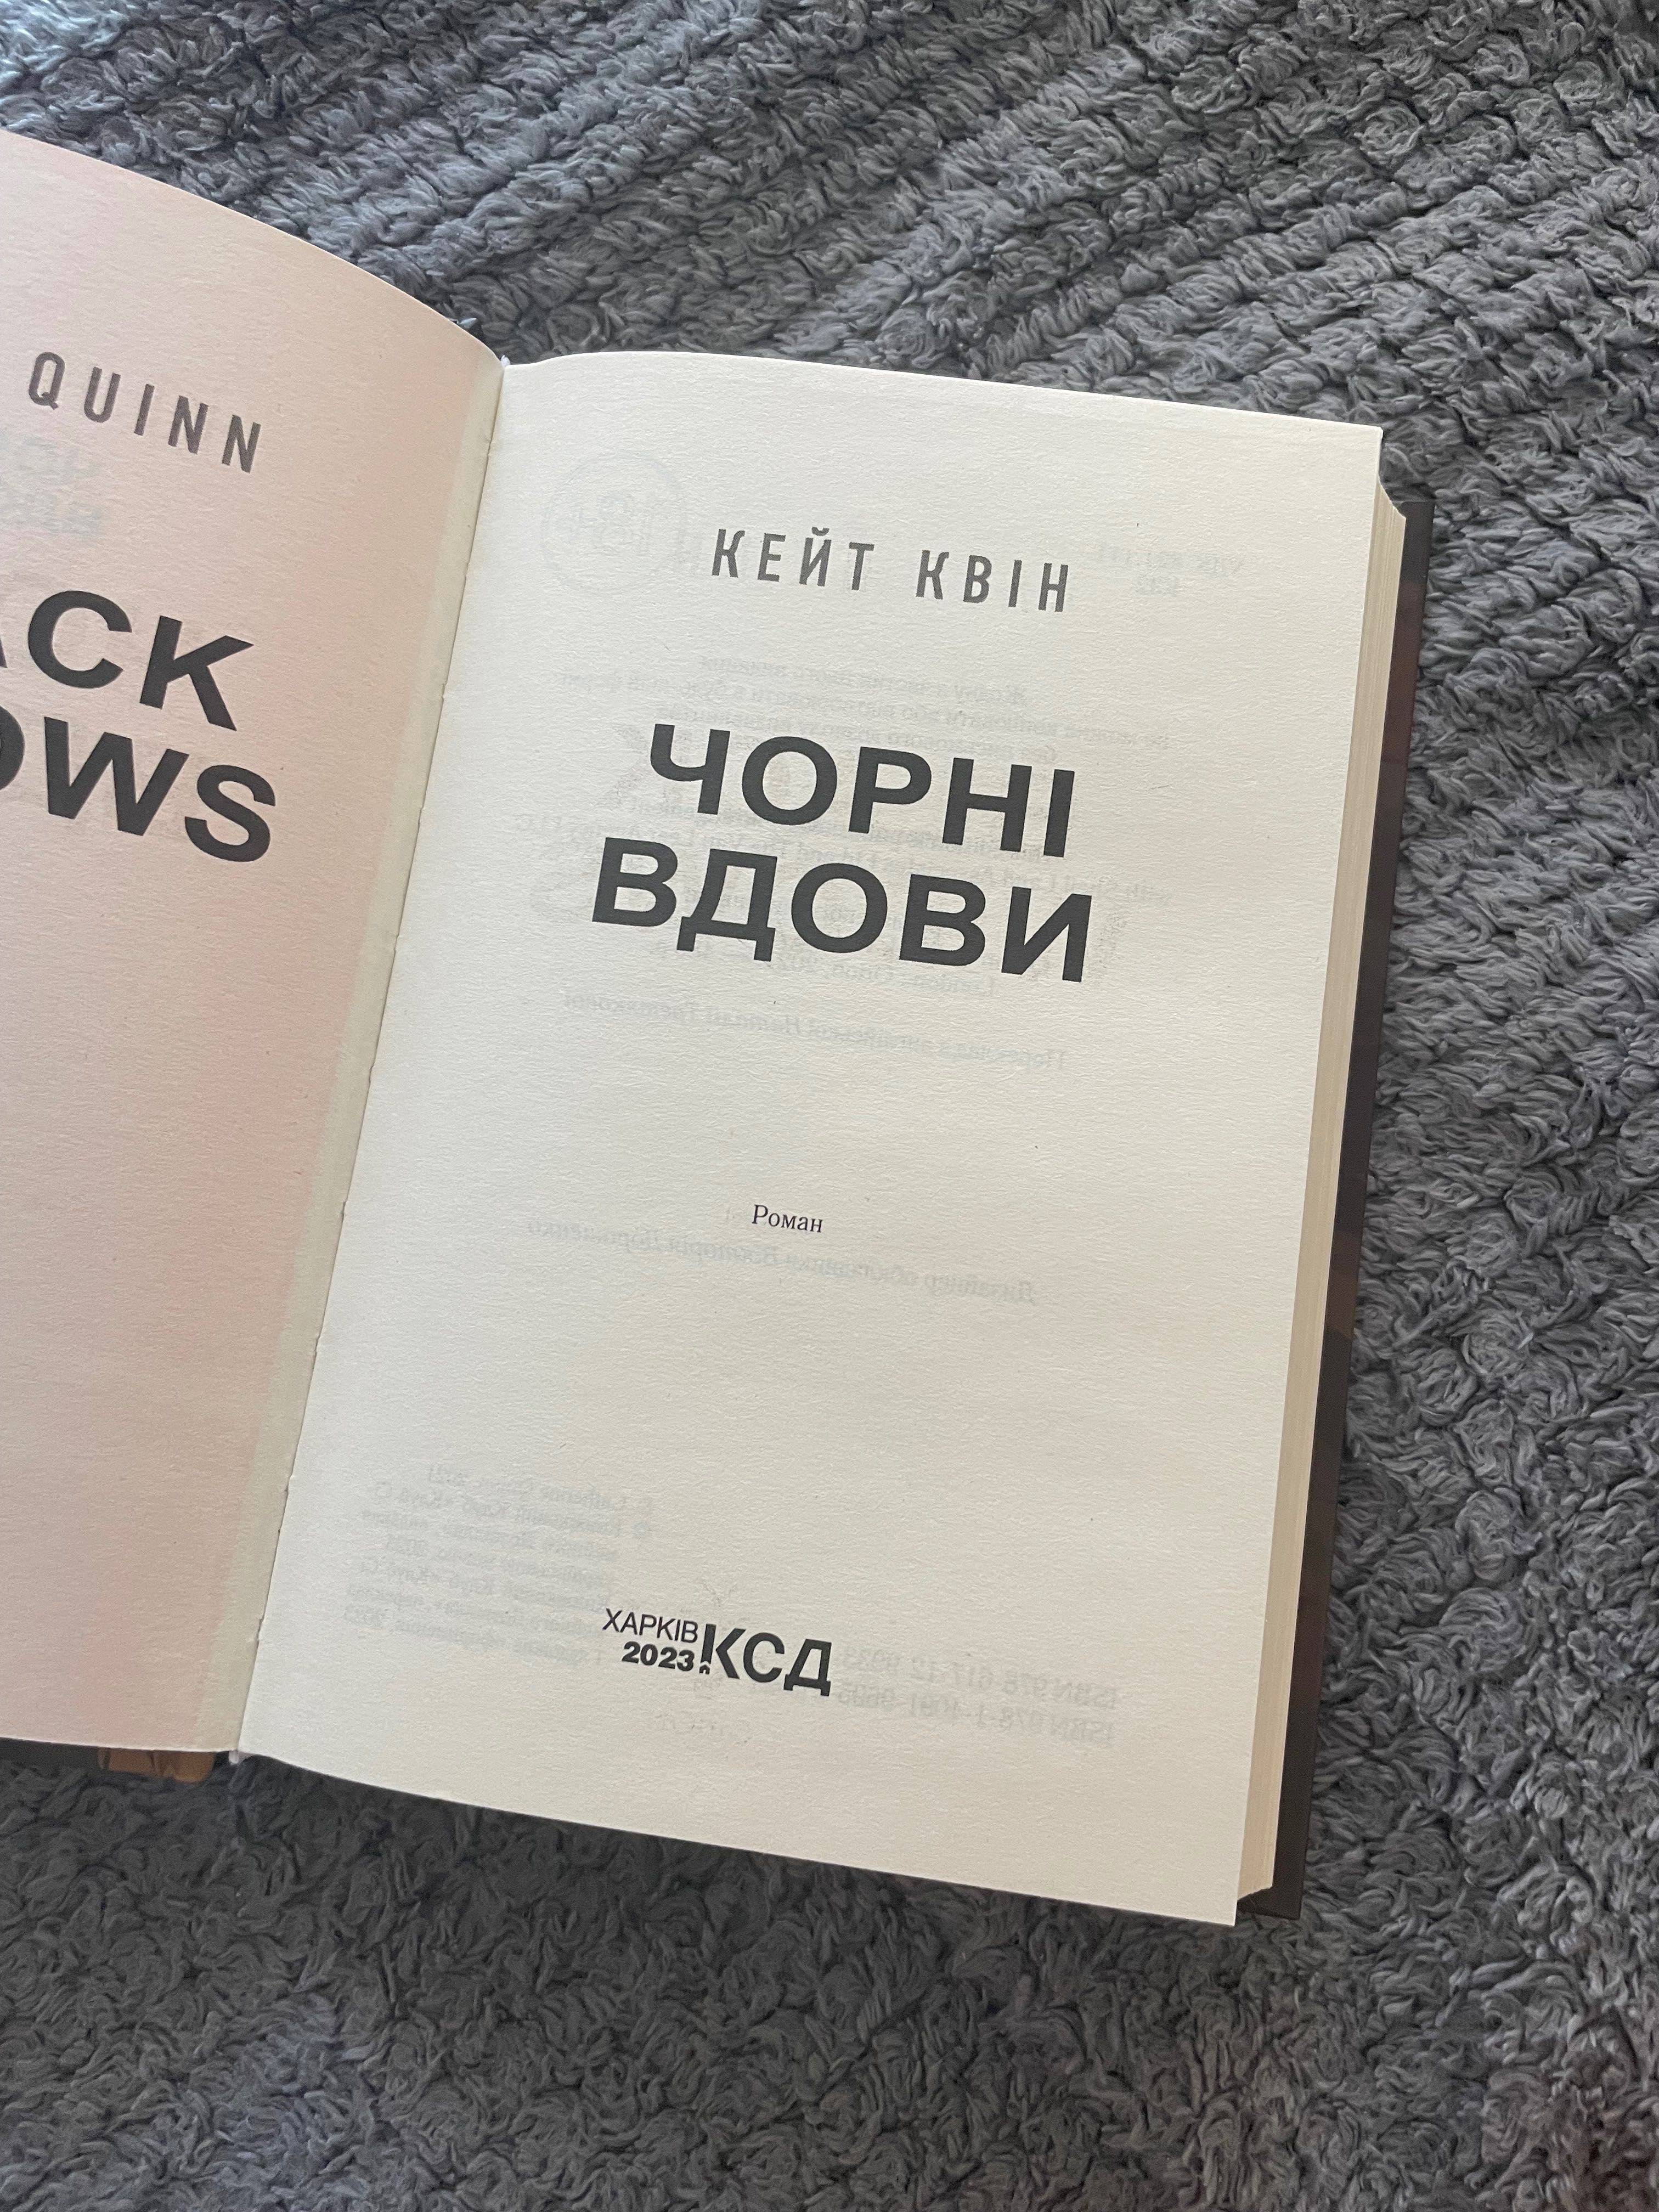 Книга «Чорні вдови»  Кейт Квін